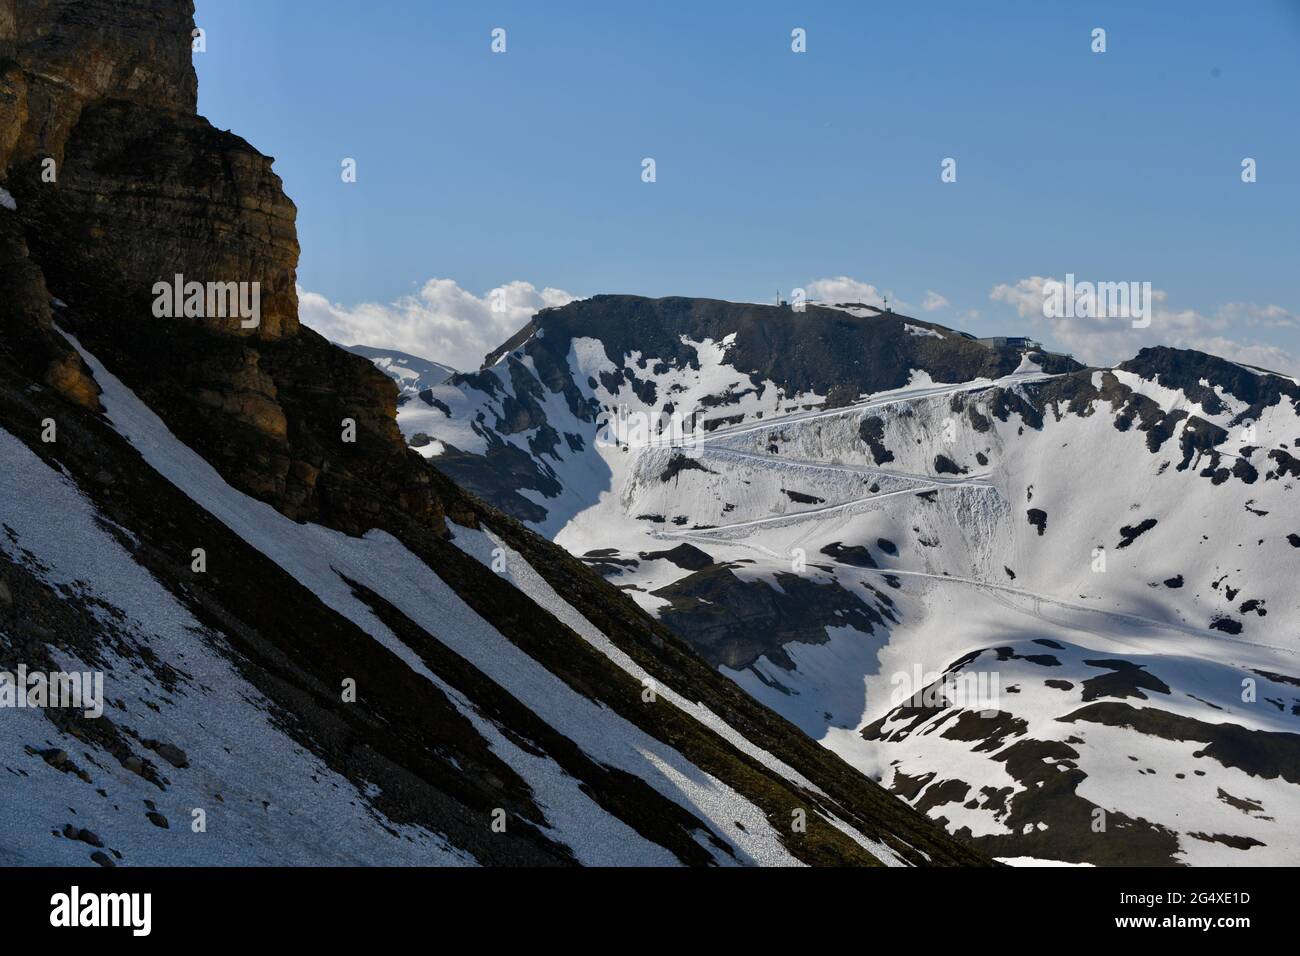 Impressionen von der Grossglockner Hochalpenstrasse mit Blick auf die weindruckende und möchten Berge der österreichischen Alpen Stock Photo